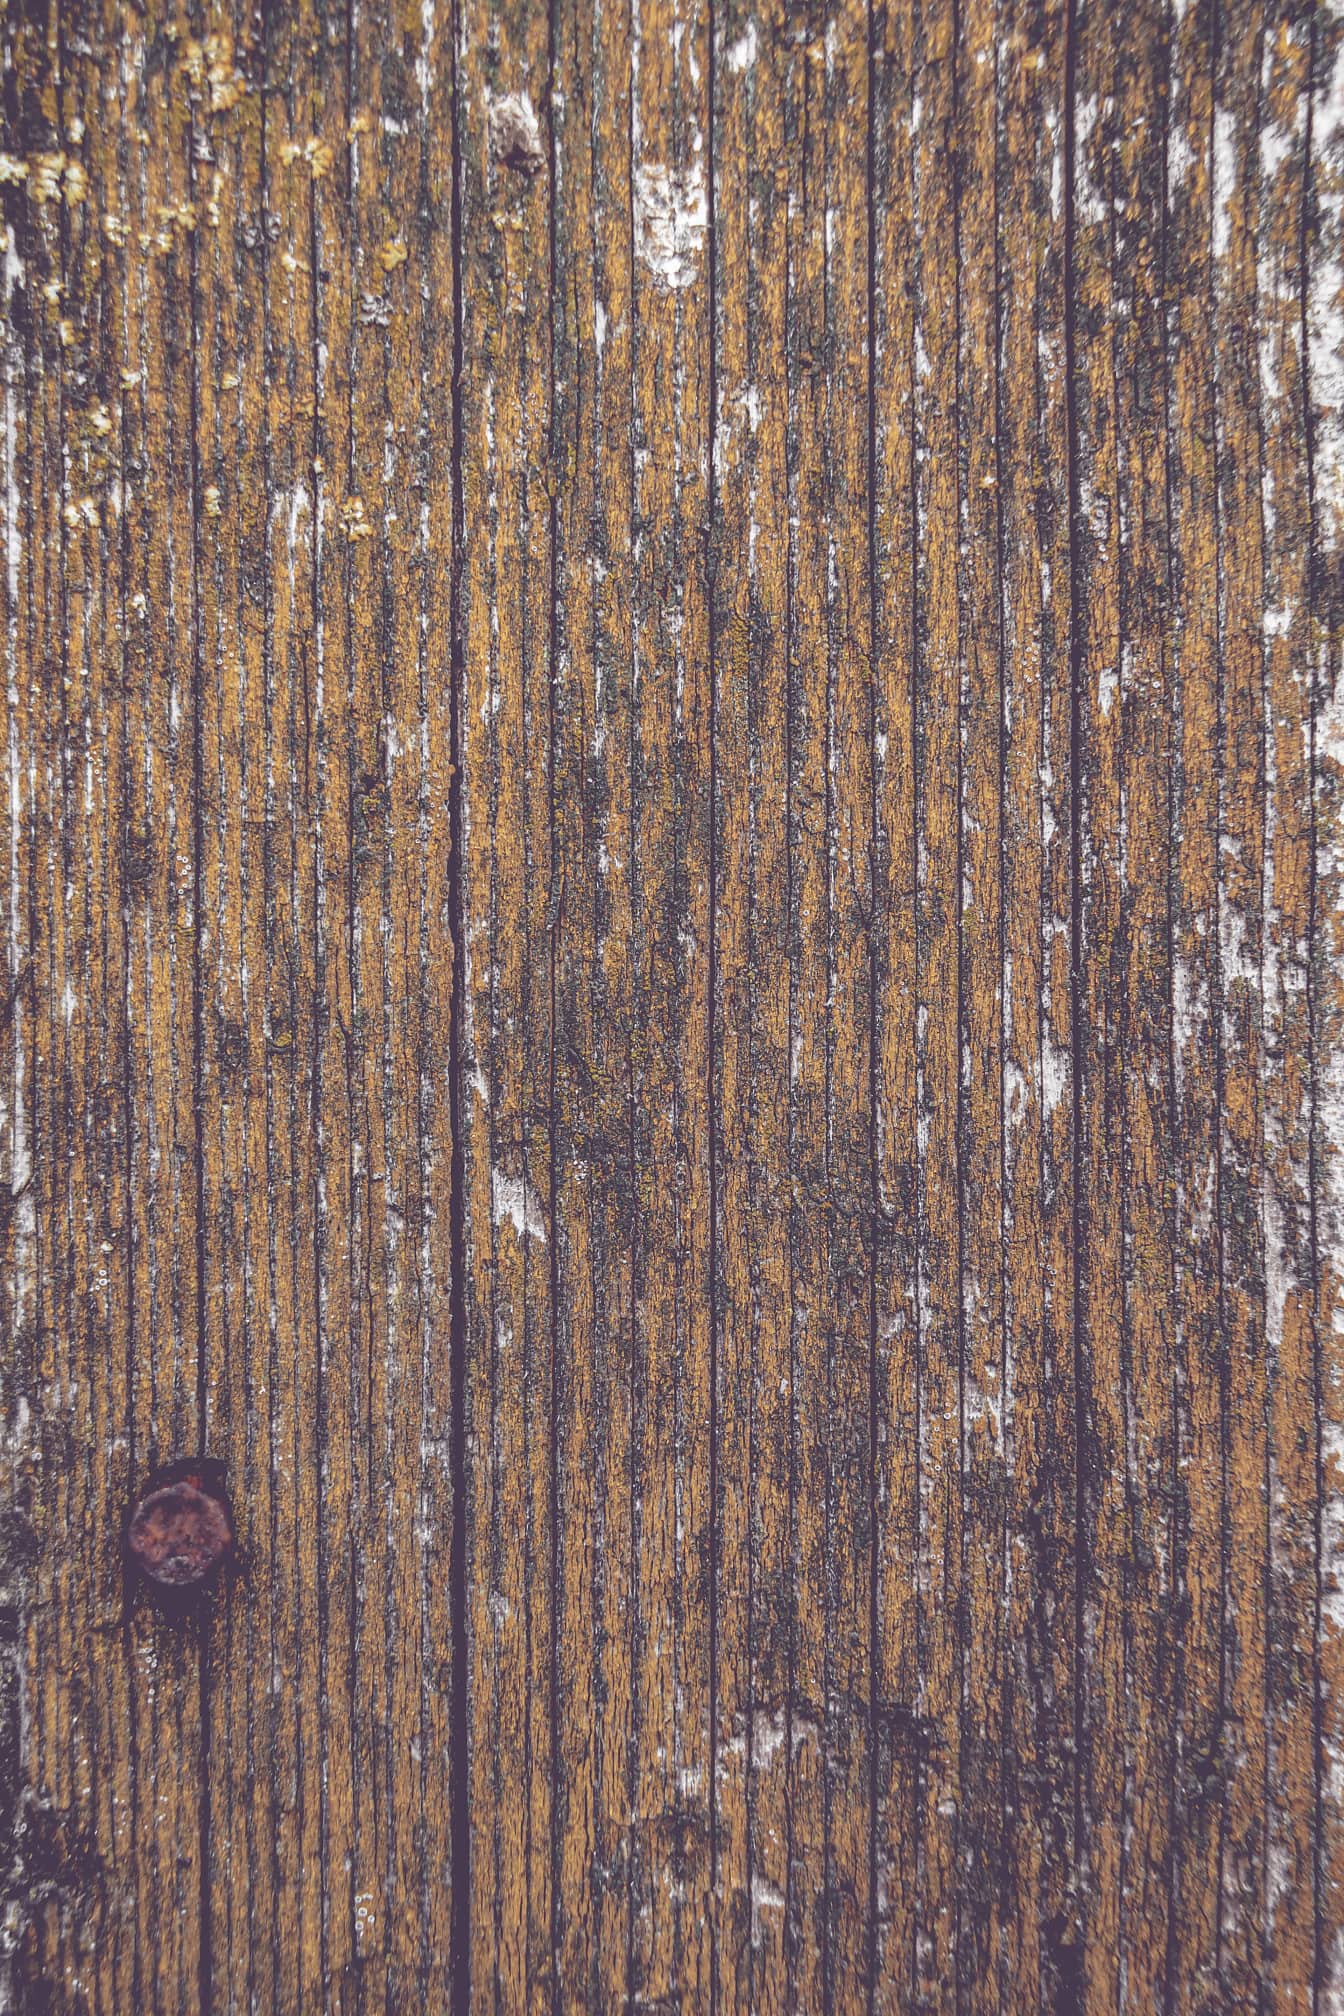 Nærbillede af gammel træplanke med rusten jernskrue